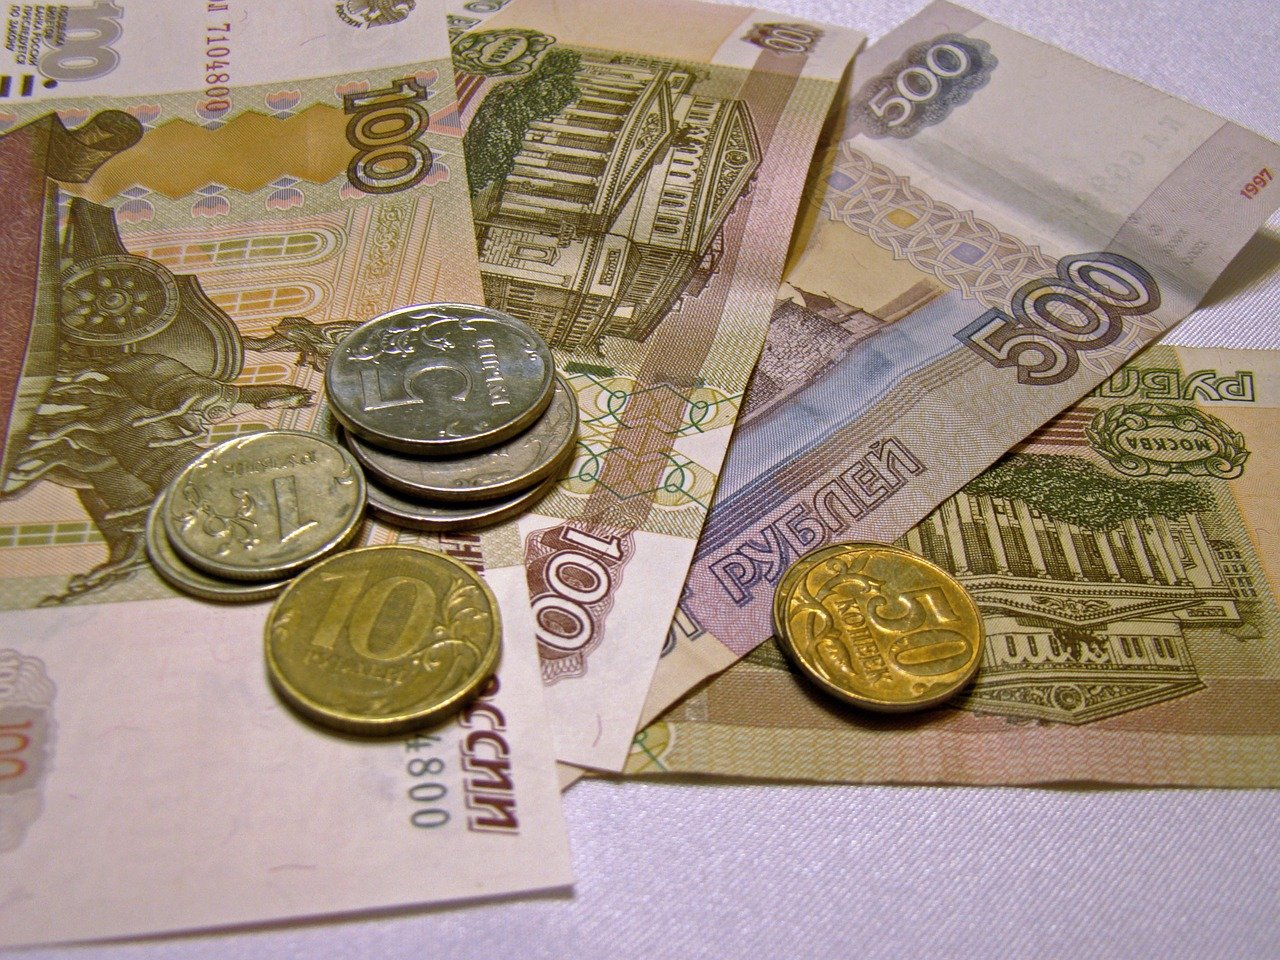 Заведующая библиотекой из Саранска перевела мошенникам почти миллион рублей